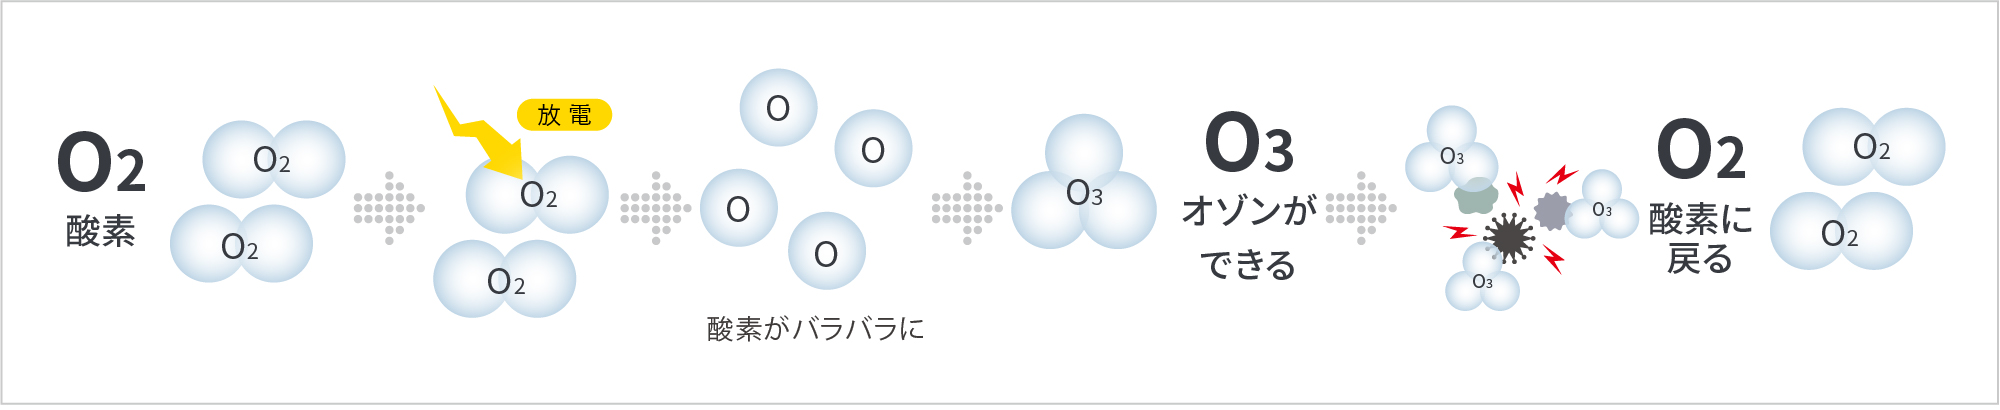 オゾンの化学式